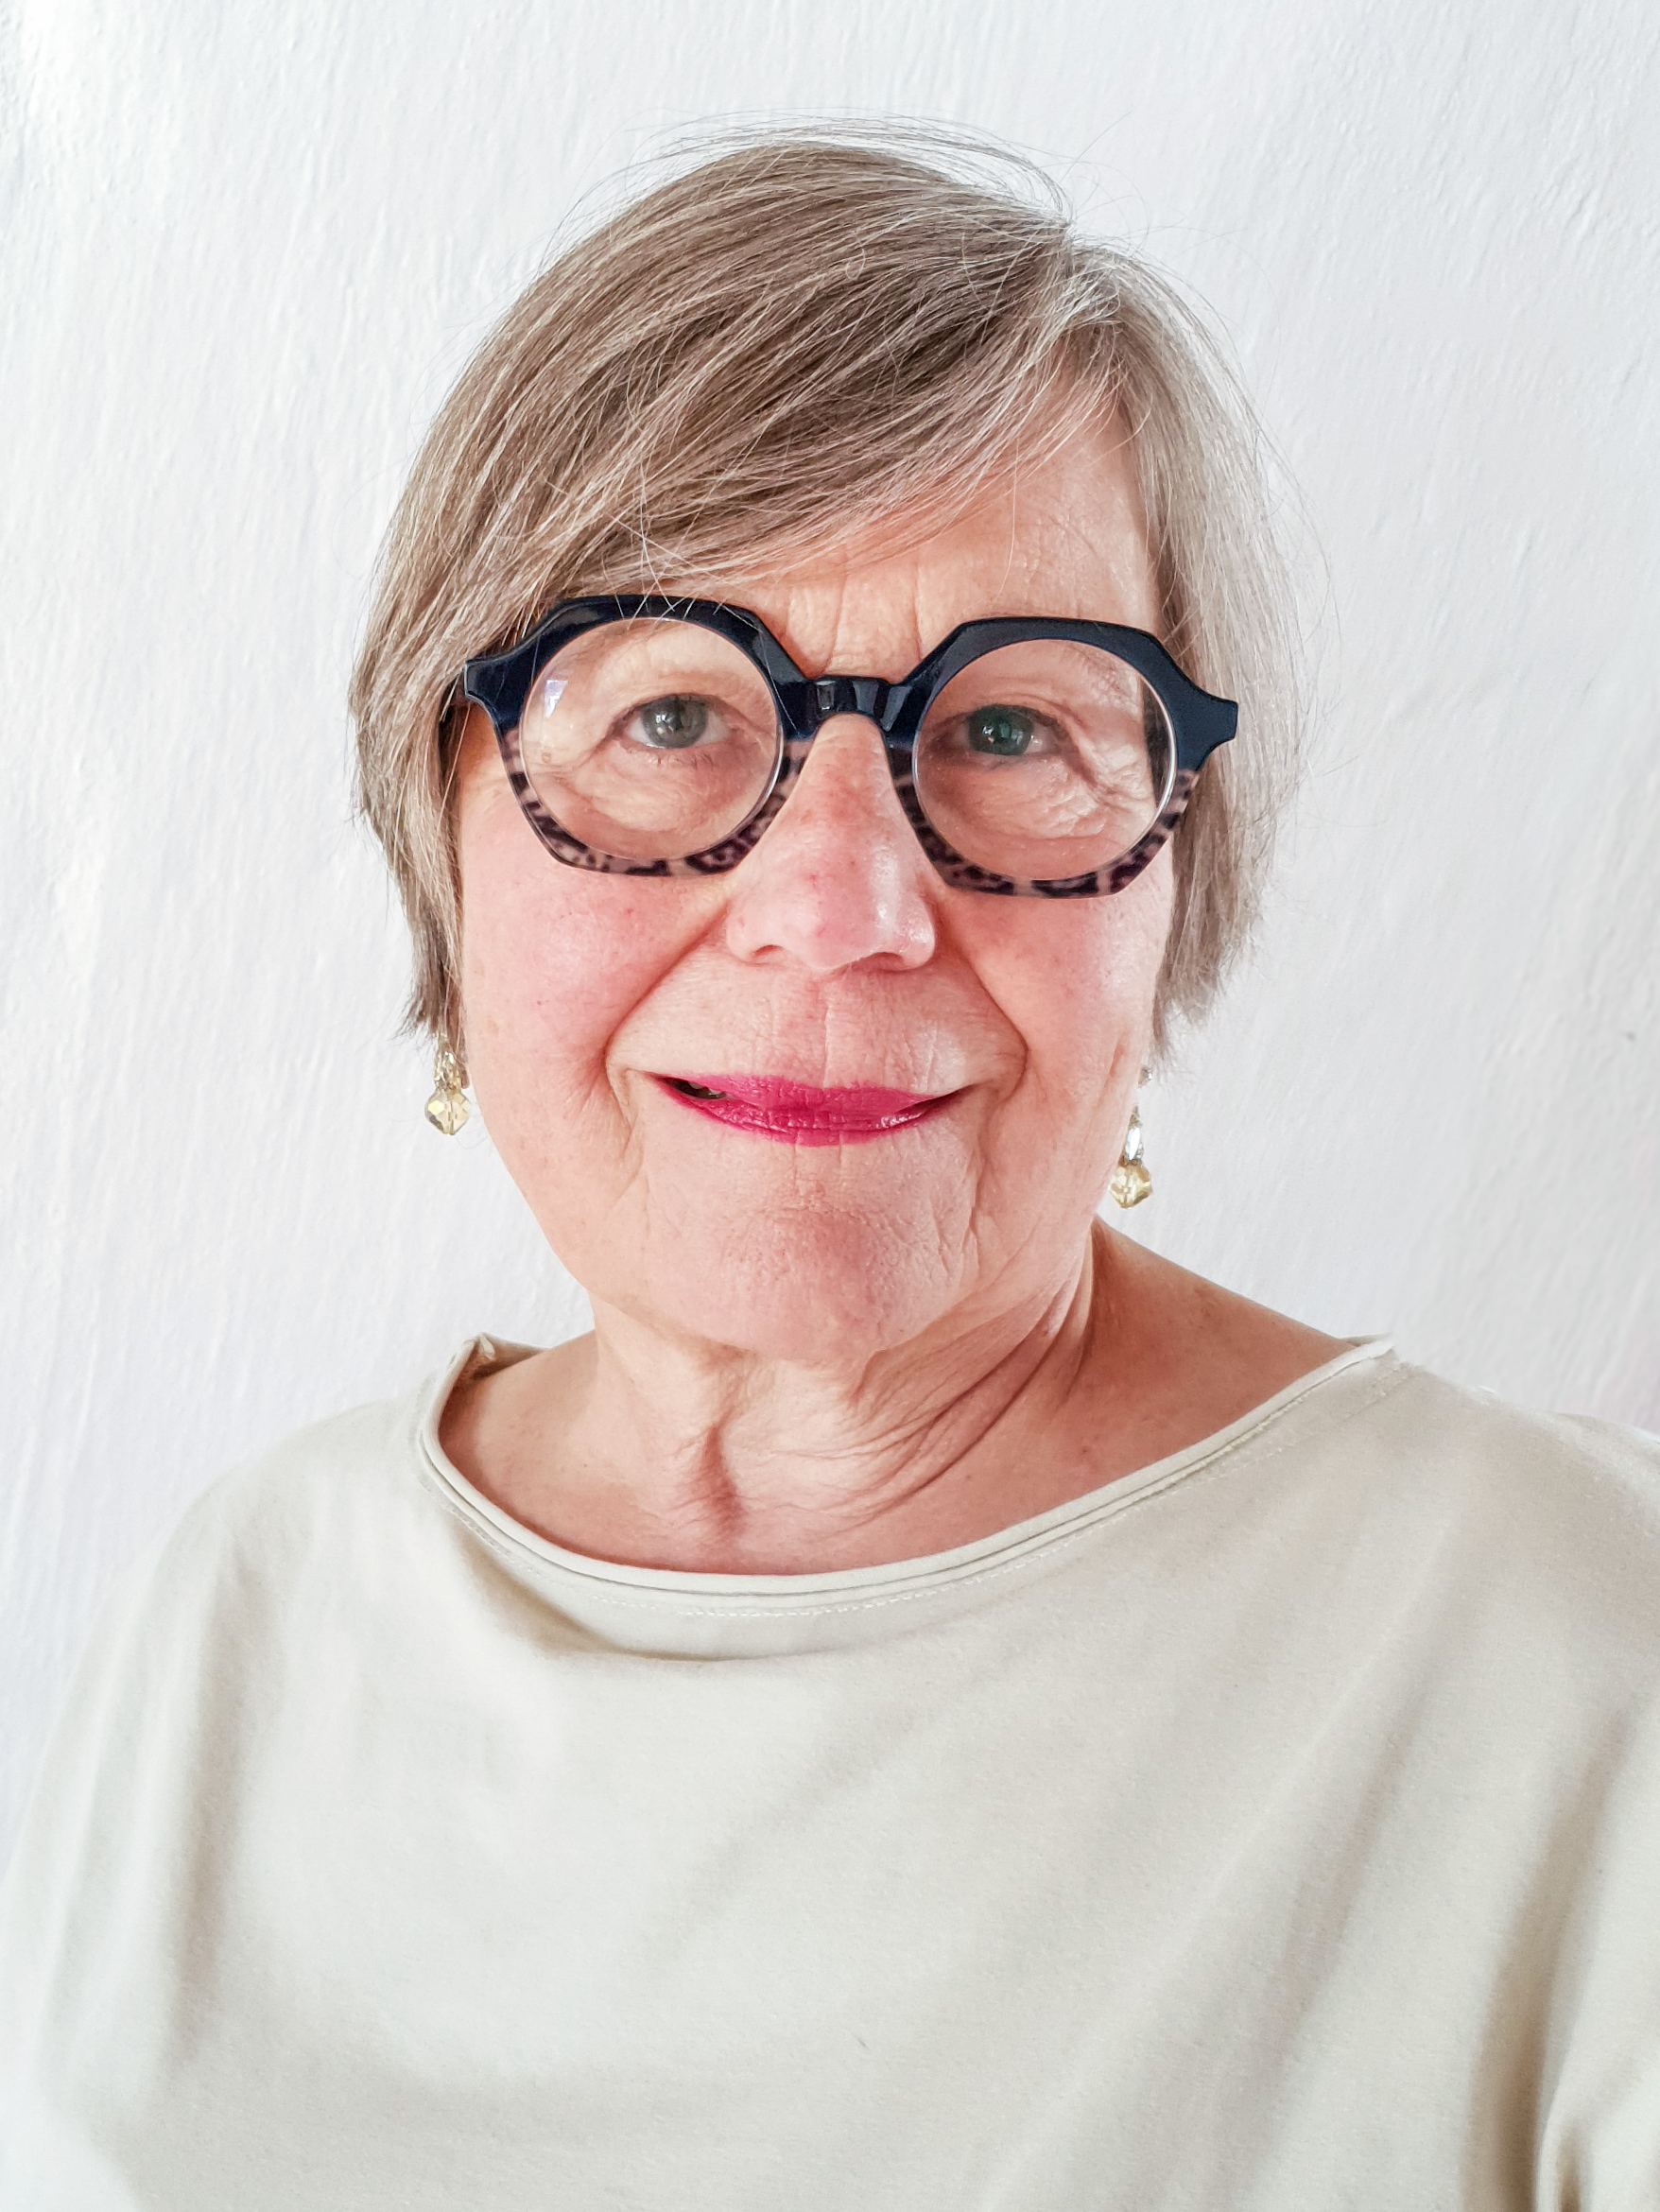 Doris Schumacher